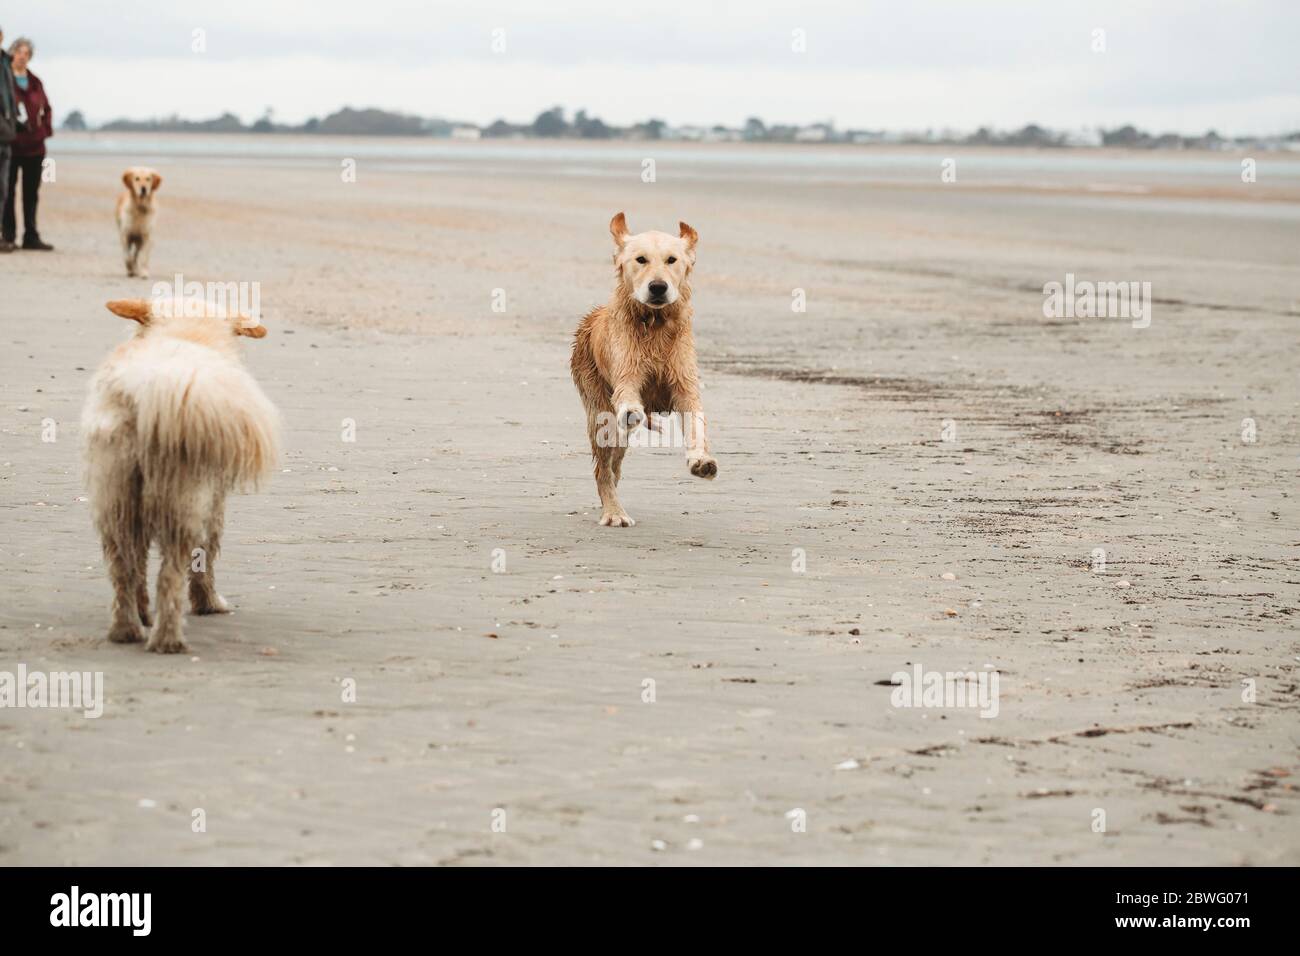 Golden retriever labrador running towards camera on the beach Stock Photo